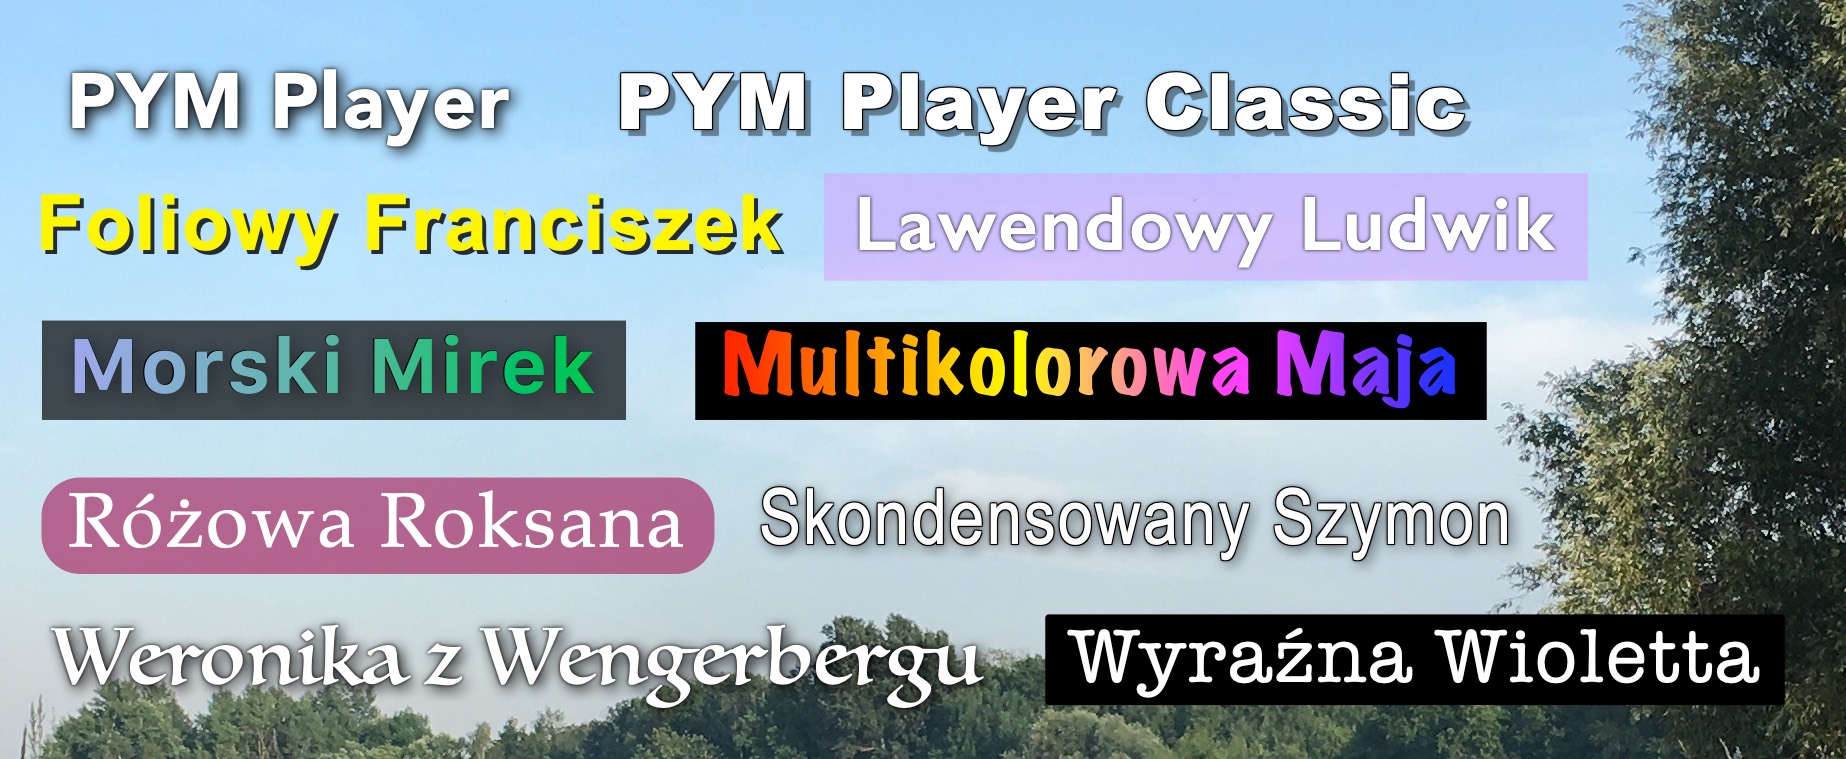 Zrzut ekranu przedstawiający wszystkie fajne style wyświetlania napisów w PYM Playerze